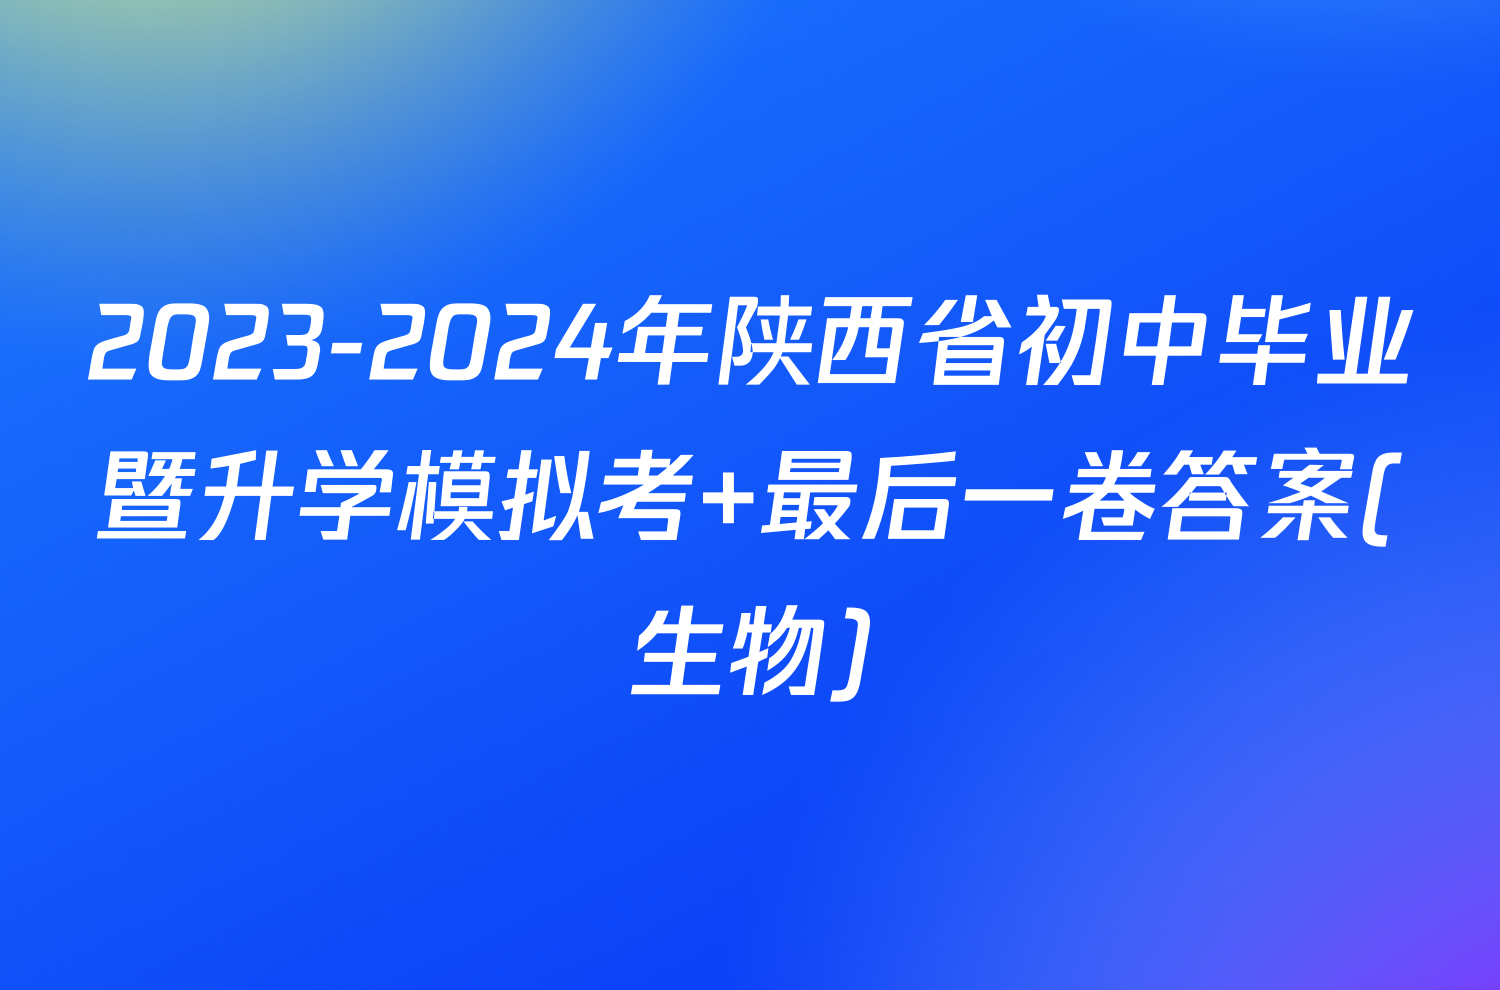 2023-2024年陕西省初中毕业暨升学模拟考 最后一卷答案(生物)